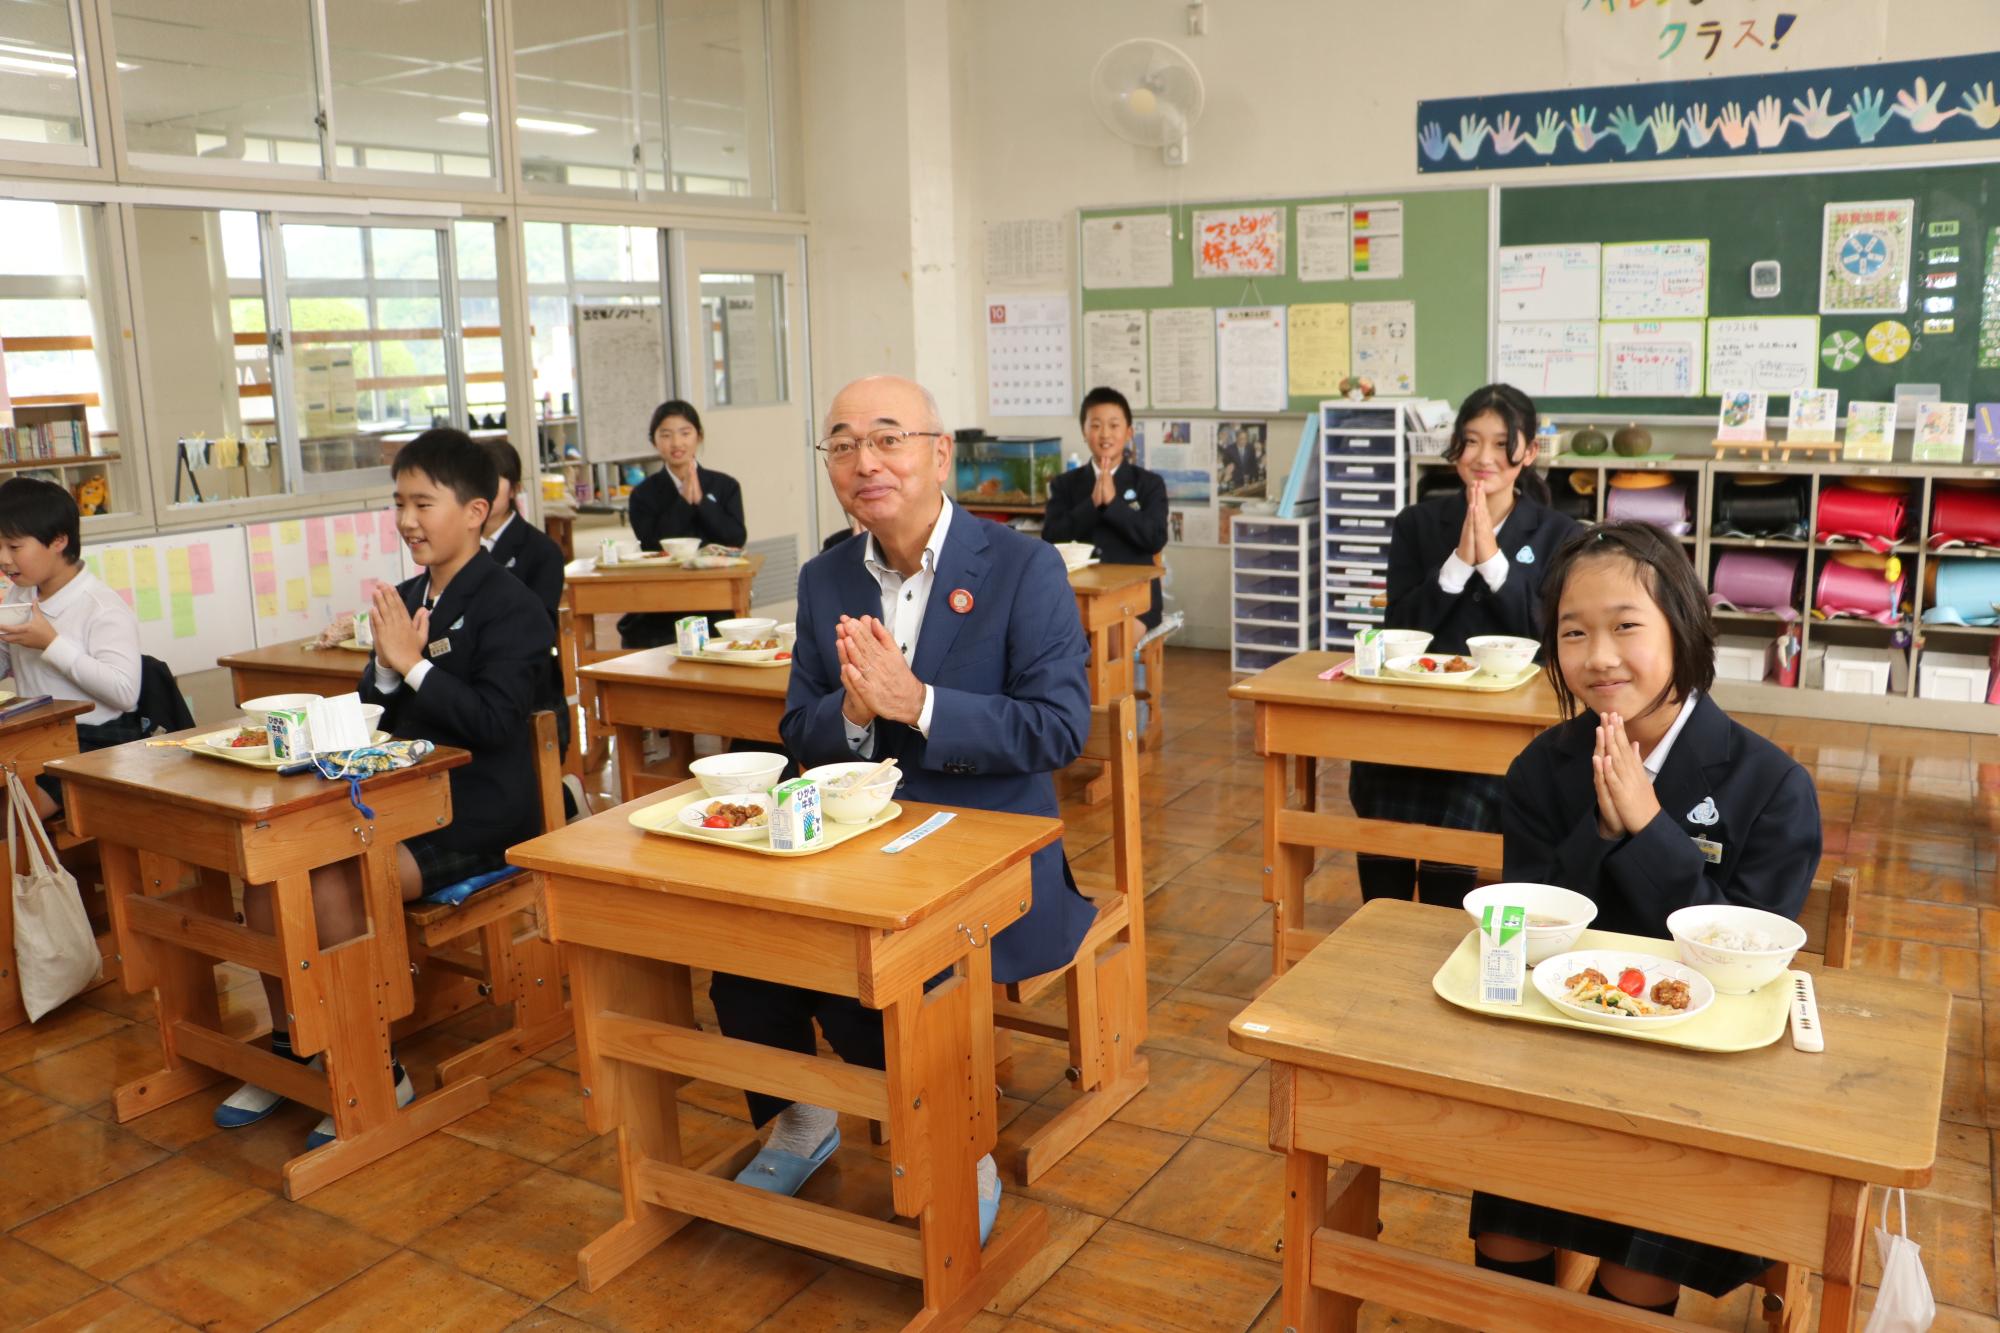 市長と子どもたちが机を並べて給食を食べようと手を合わせている